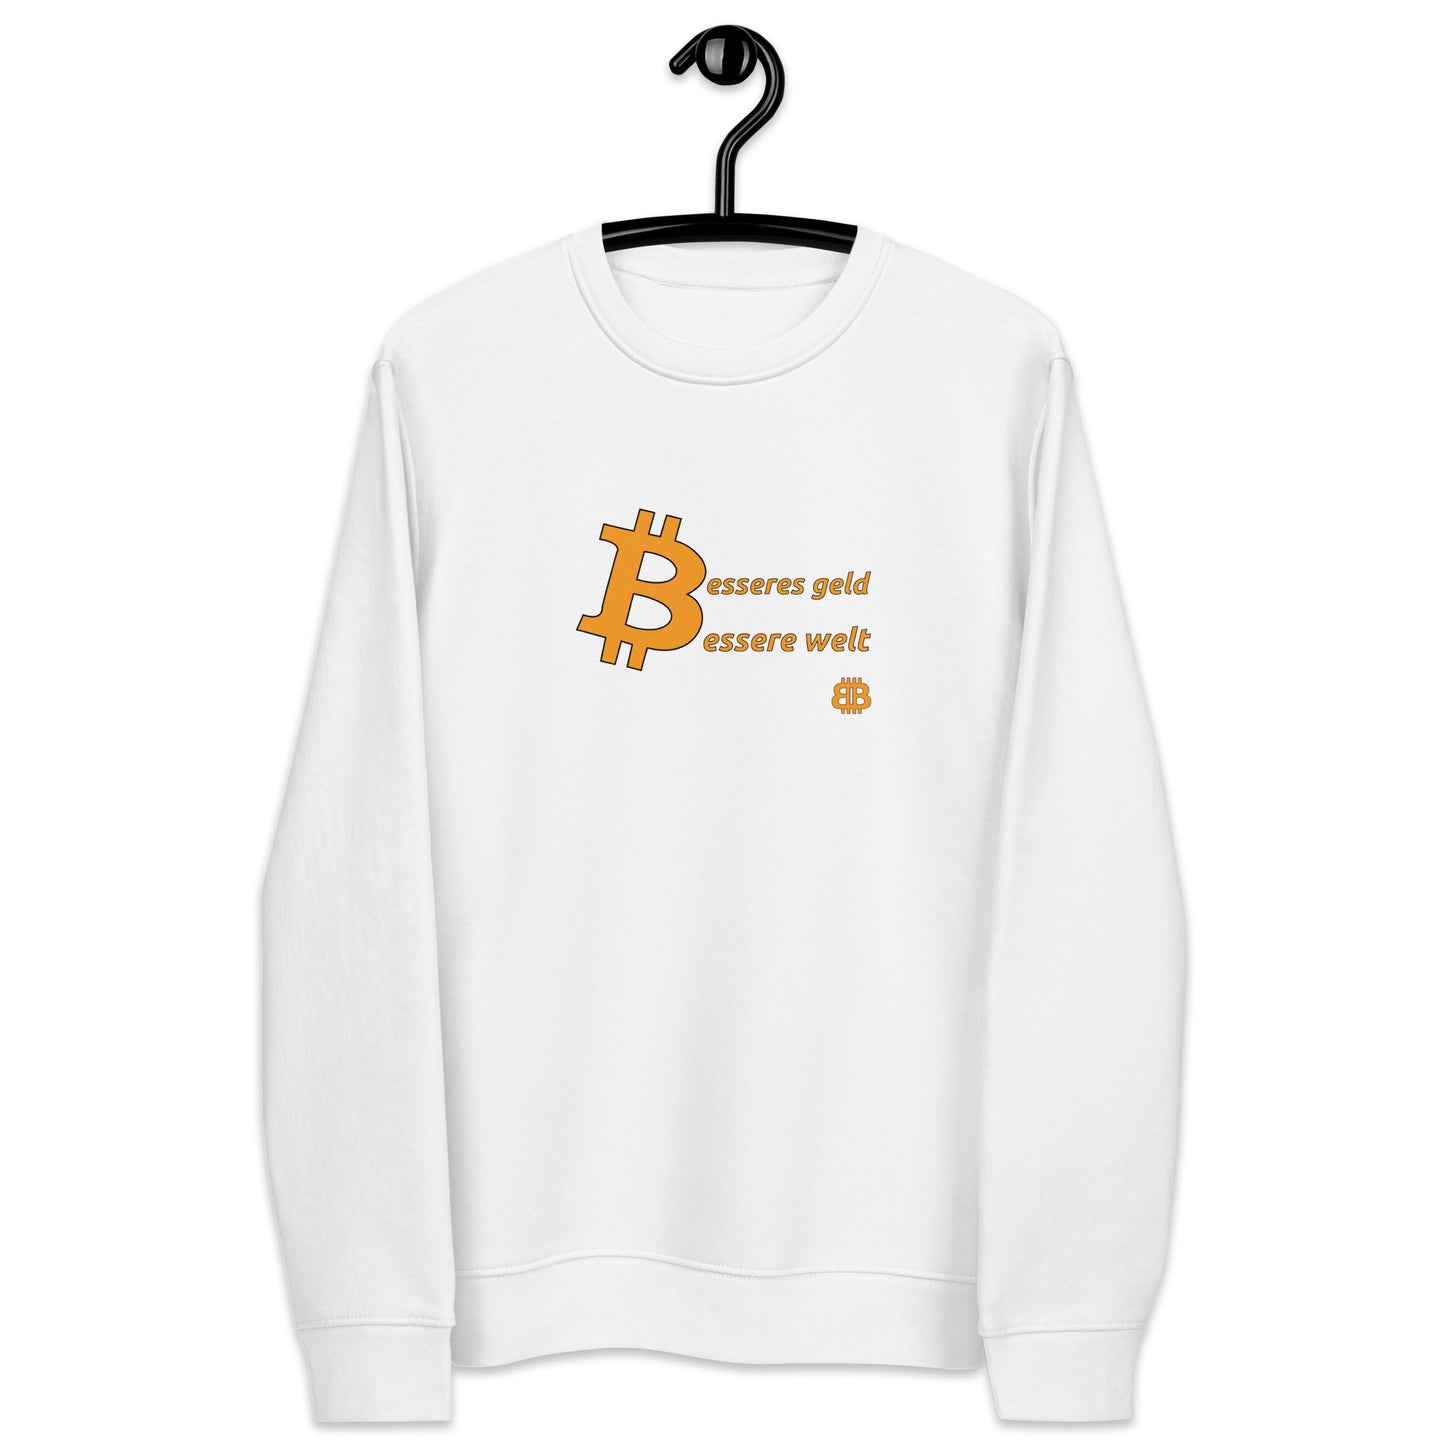 Women's eco sweatshirt "Geld-Welt"